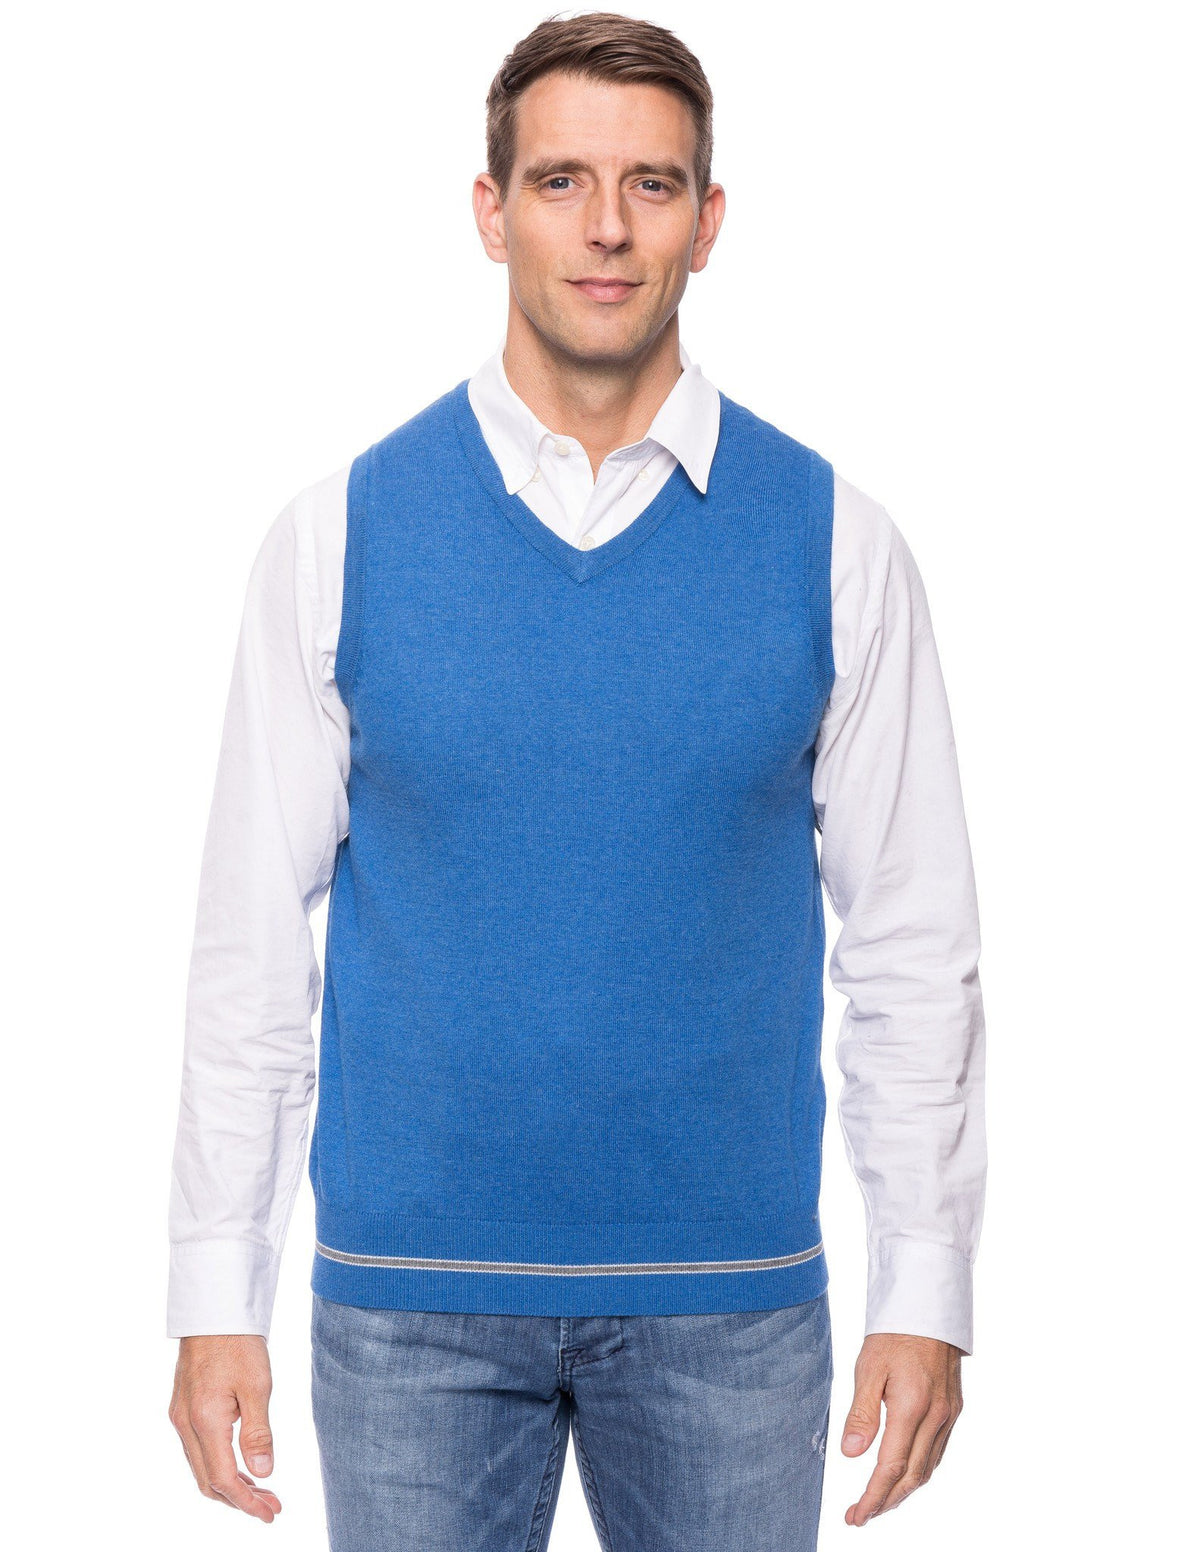 Gift Packaged Men's Cashmere Blend Sweater Vest - Light Blue